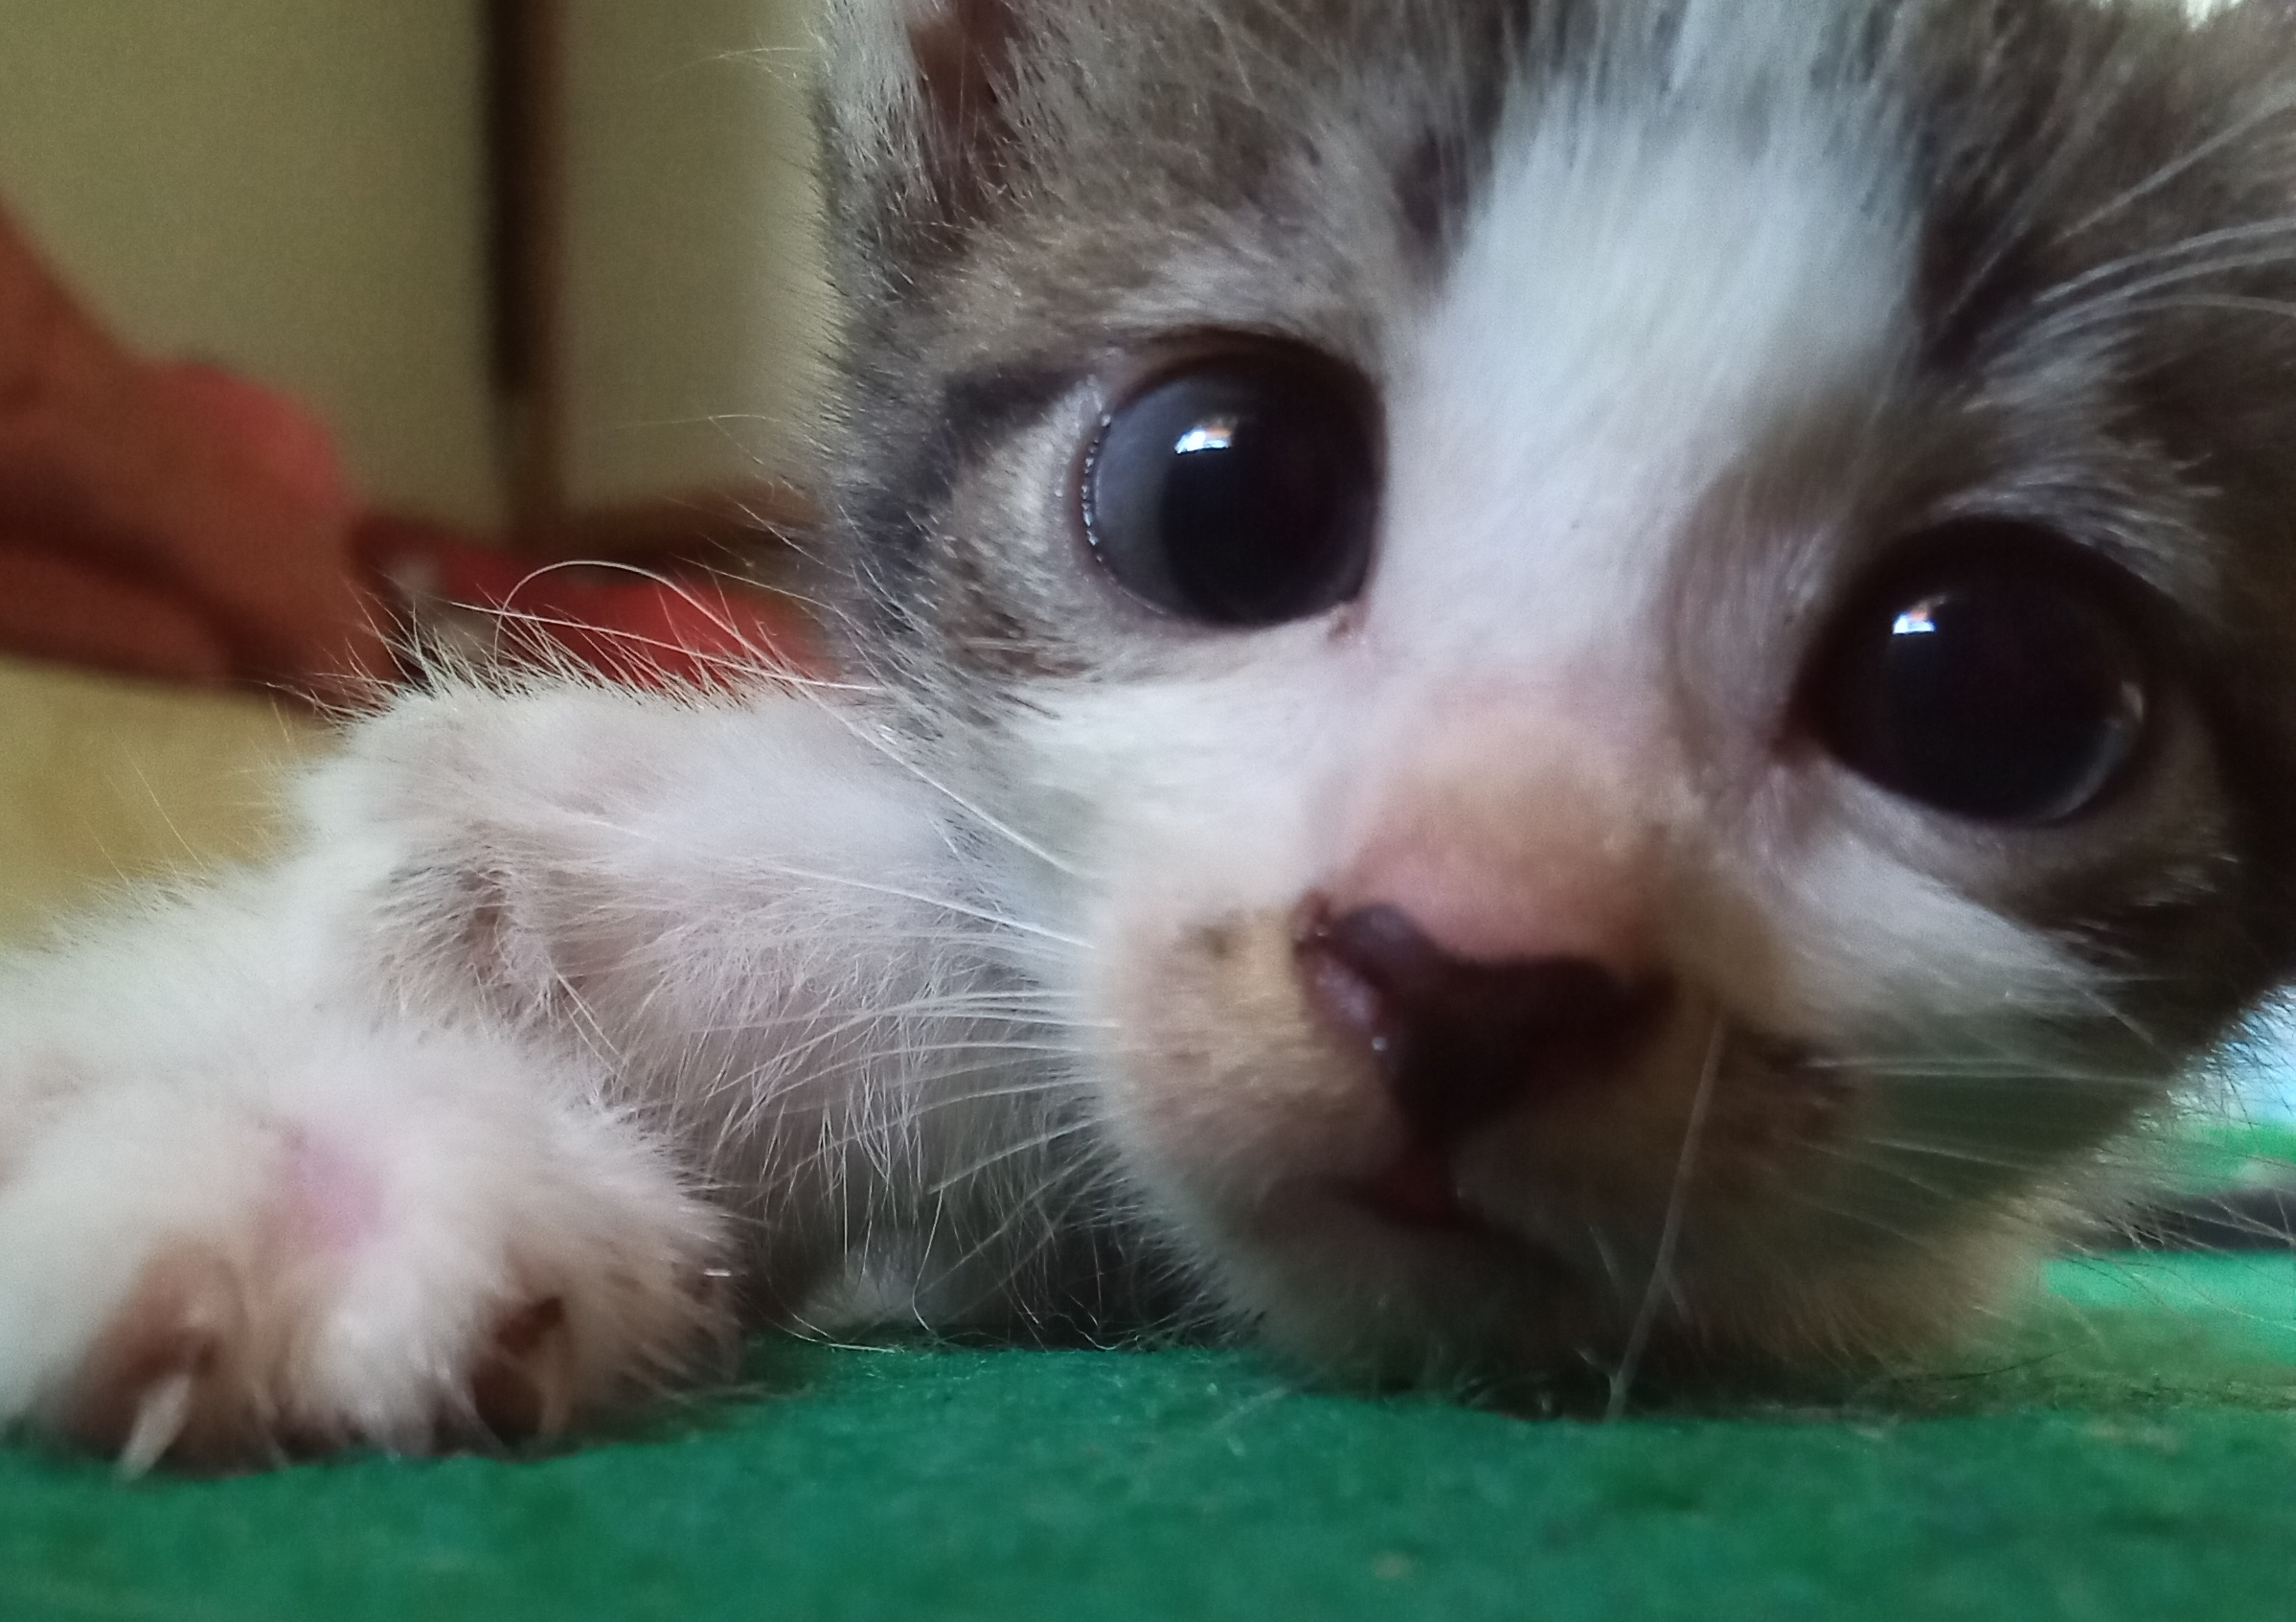 Internet Sobs As Kitten Bulging Eyes Dies Soon After Birth: 'My